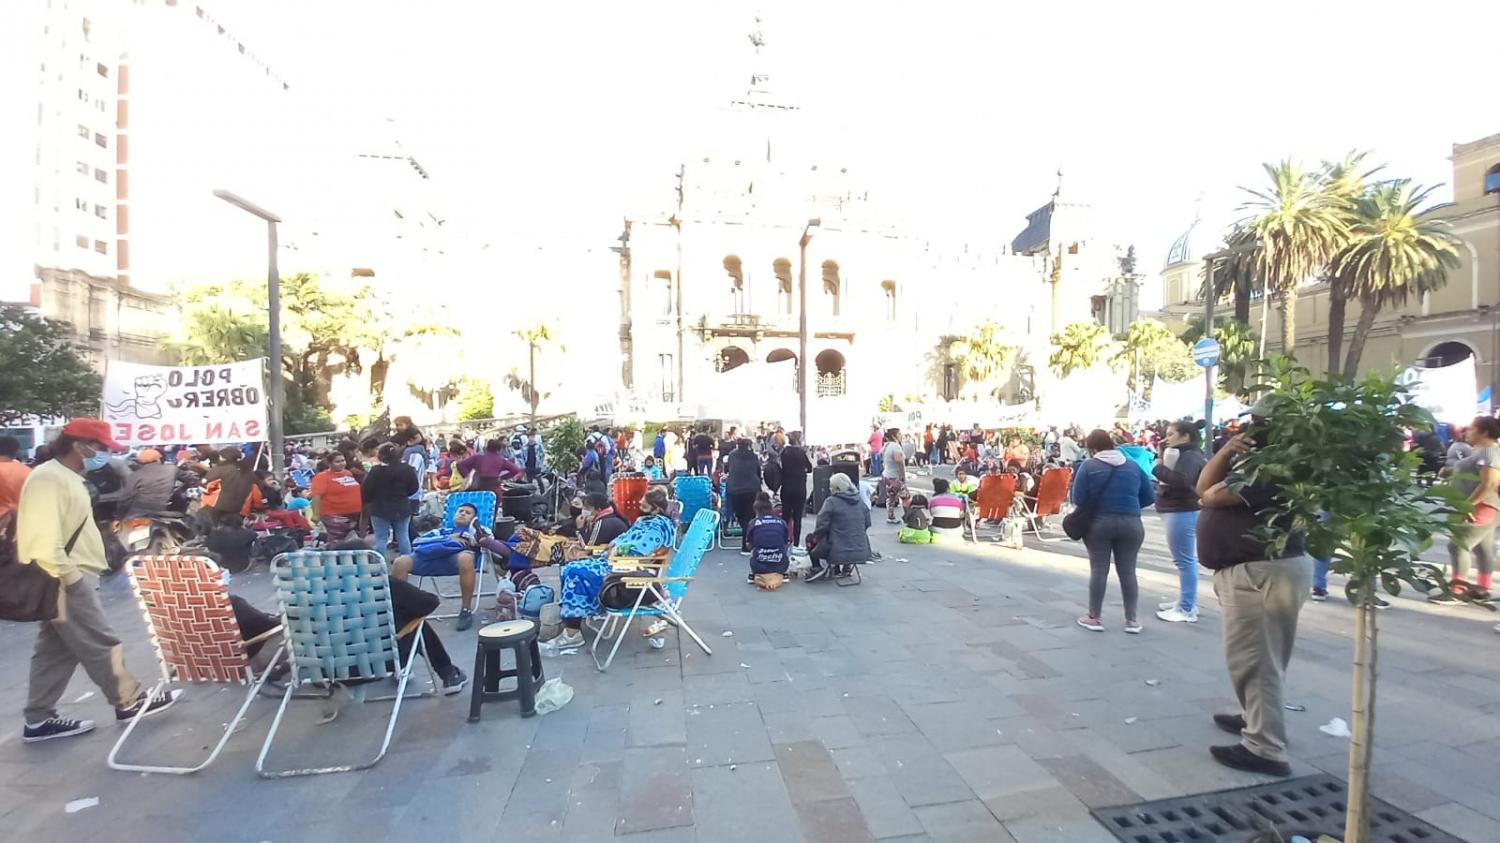 RECLAMO. El acampe en la plaza Independencia se enmarca en una protesta piquetera a nivel nacional. Foto de LA GACETA / Analía Jaramillo